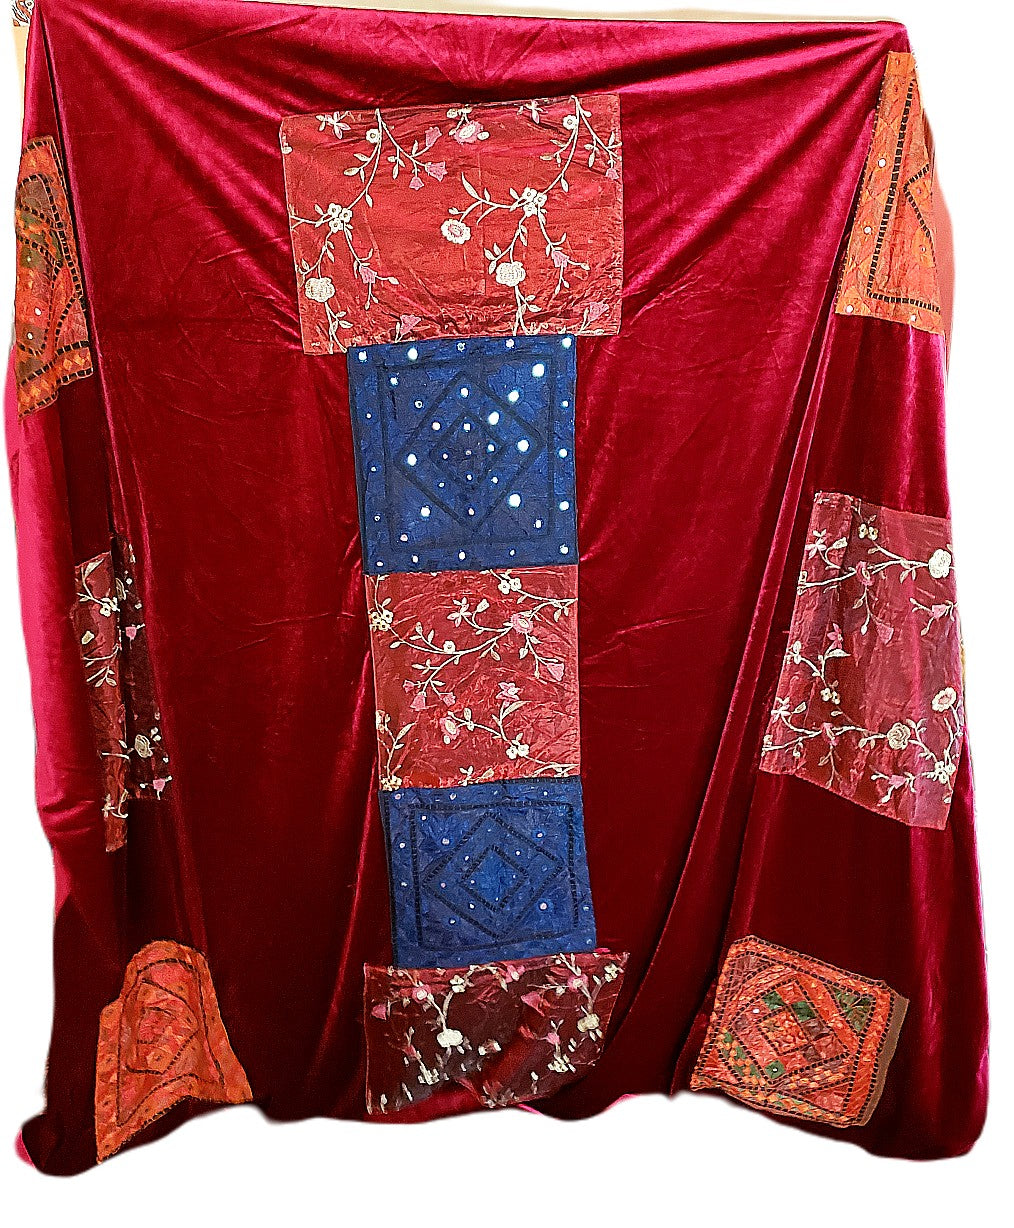 Vintage King Size Velvet Bedspread With Embroidered Patchwork